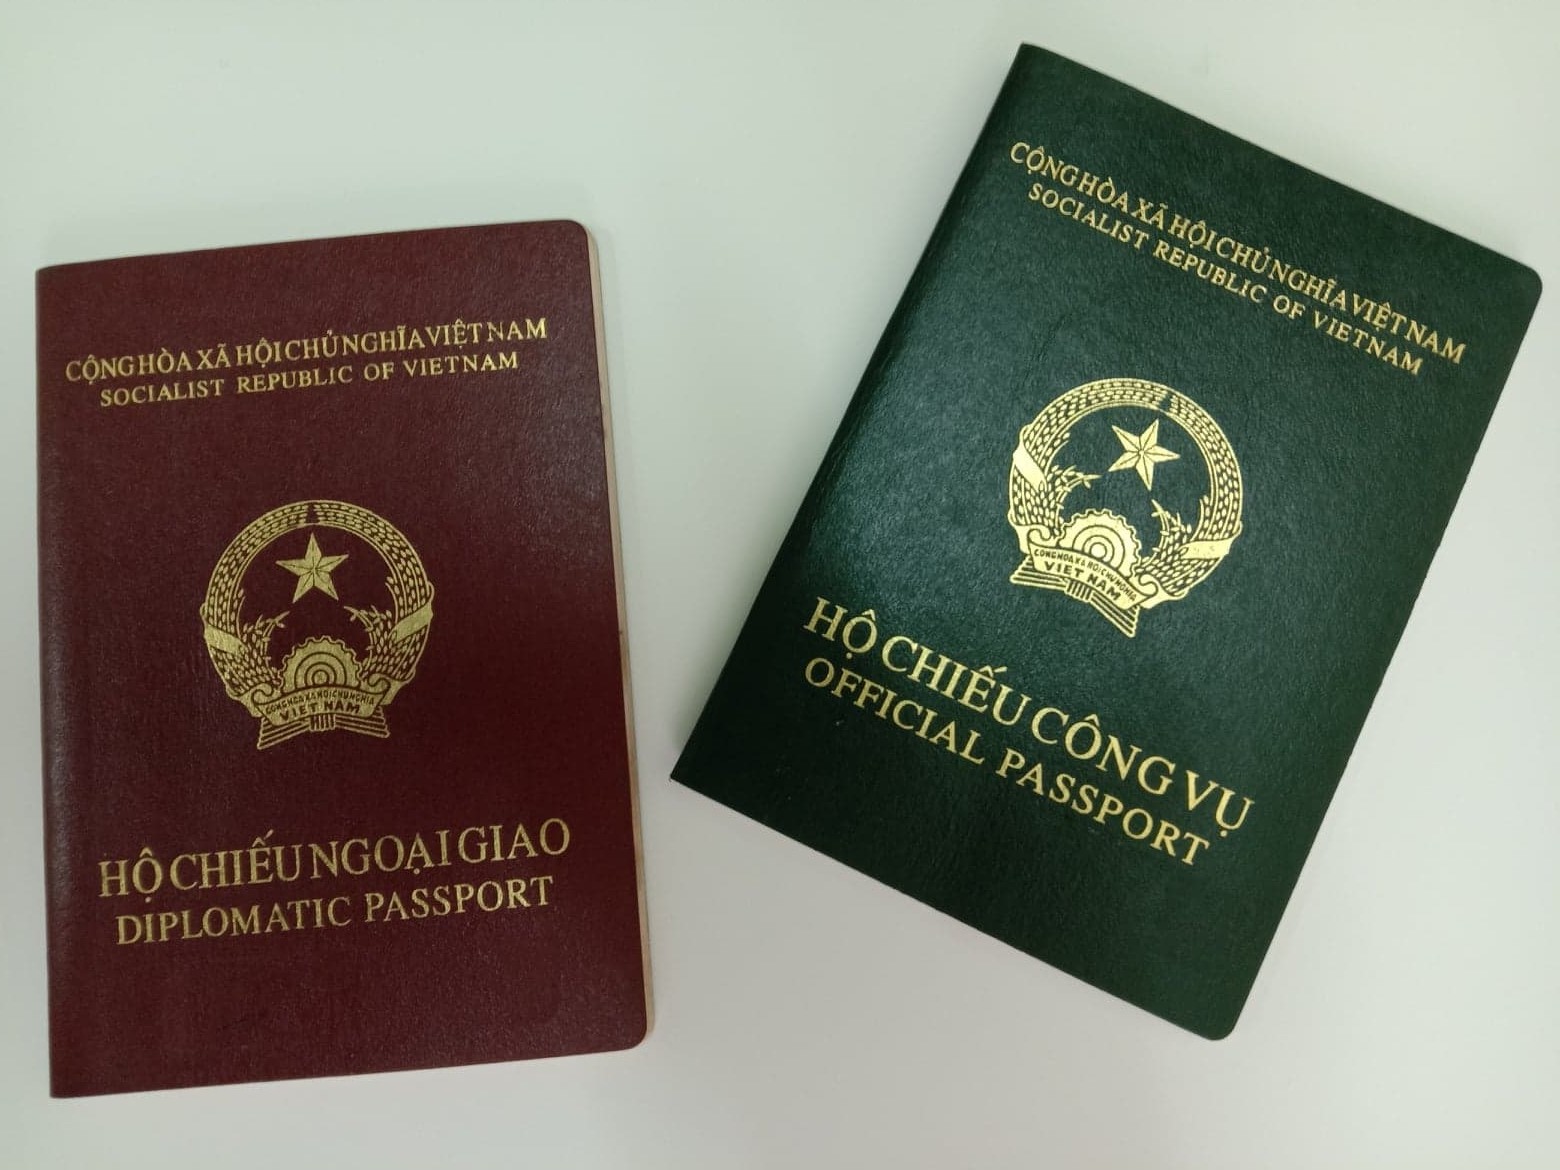 Thủ tục cấp hộ chiếu ngoại giao, hộ chiếu công vụ (không gắn chip điện tử) tại cơ quan trong nước của Bộ Ngoại giao